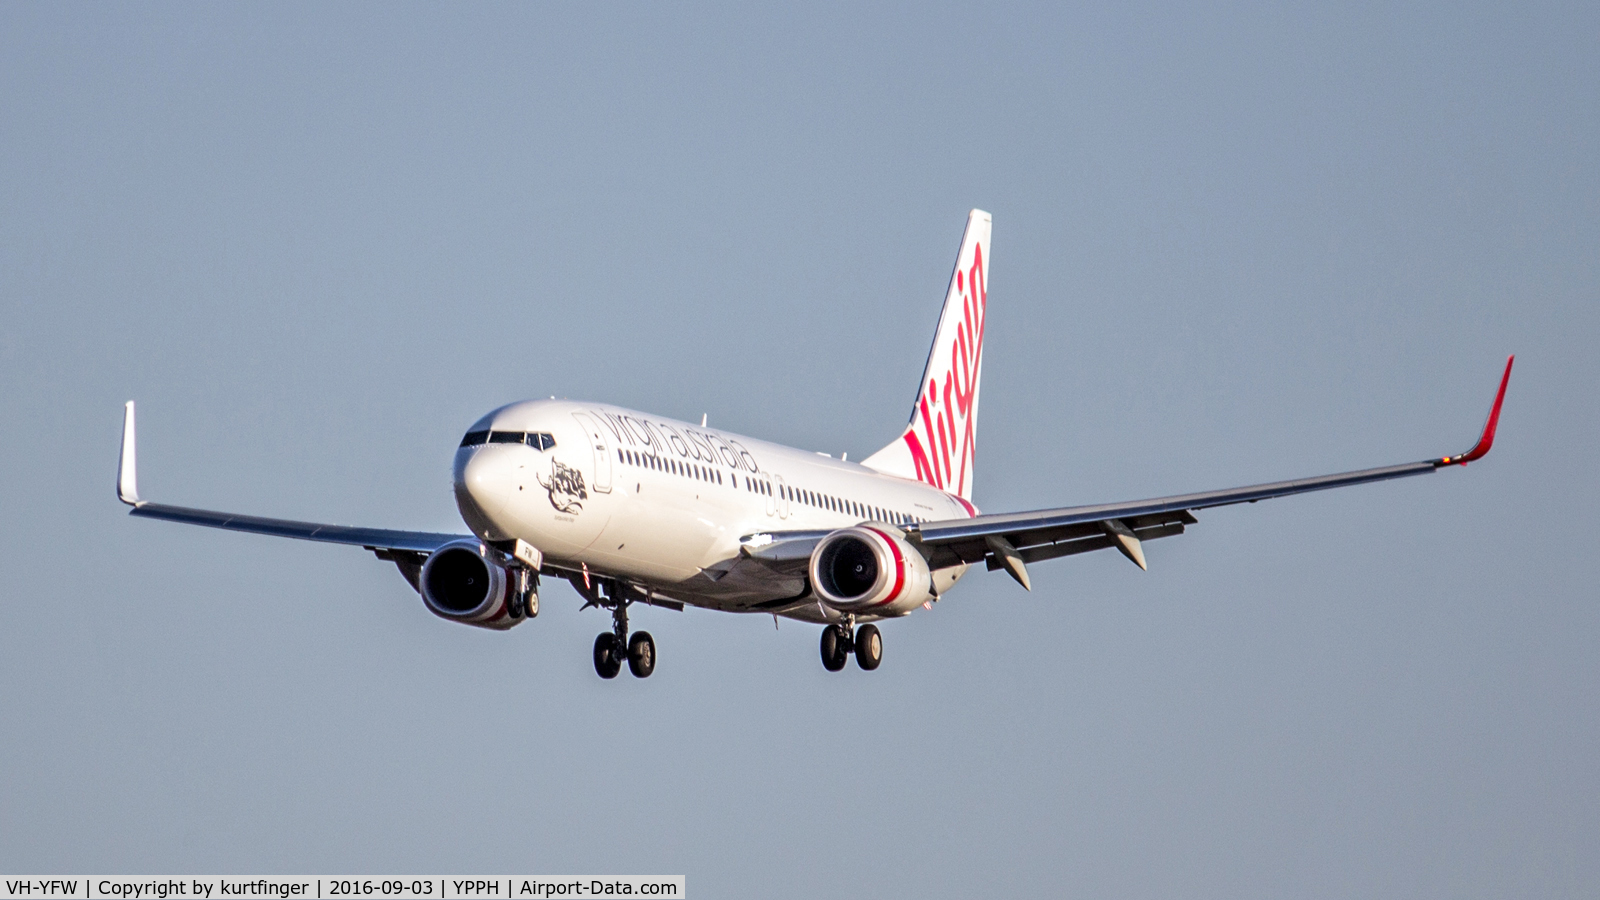 VH-YFW, 2016 Boeing 737-8FE C/N 41037, Boeing 737-8FE Virgin Australia VH-YFW, final rwy 03, 030916 YPPH